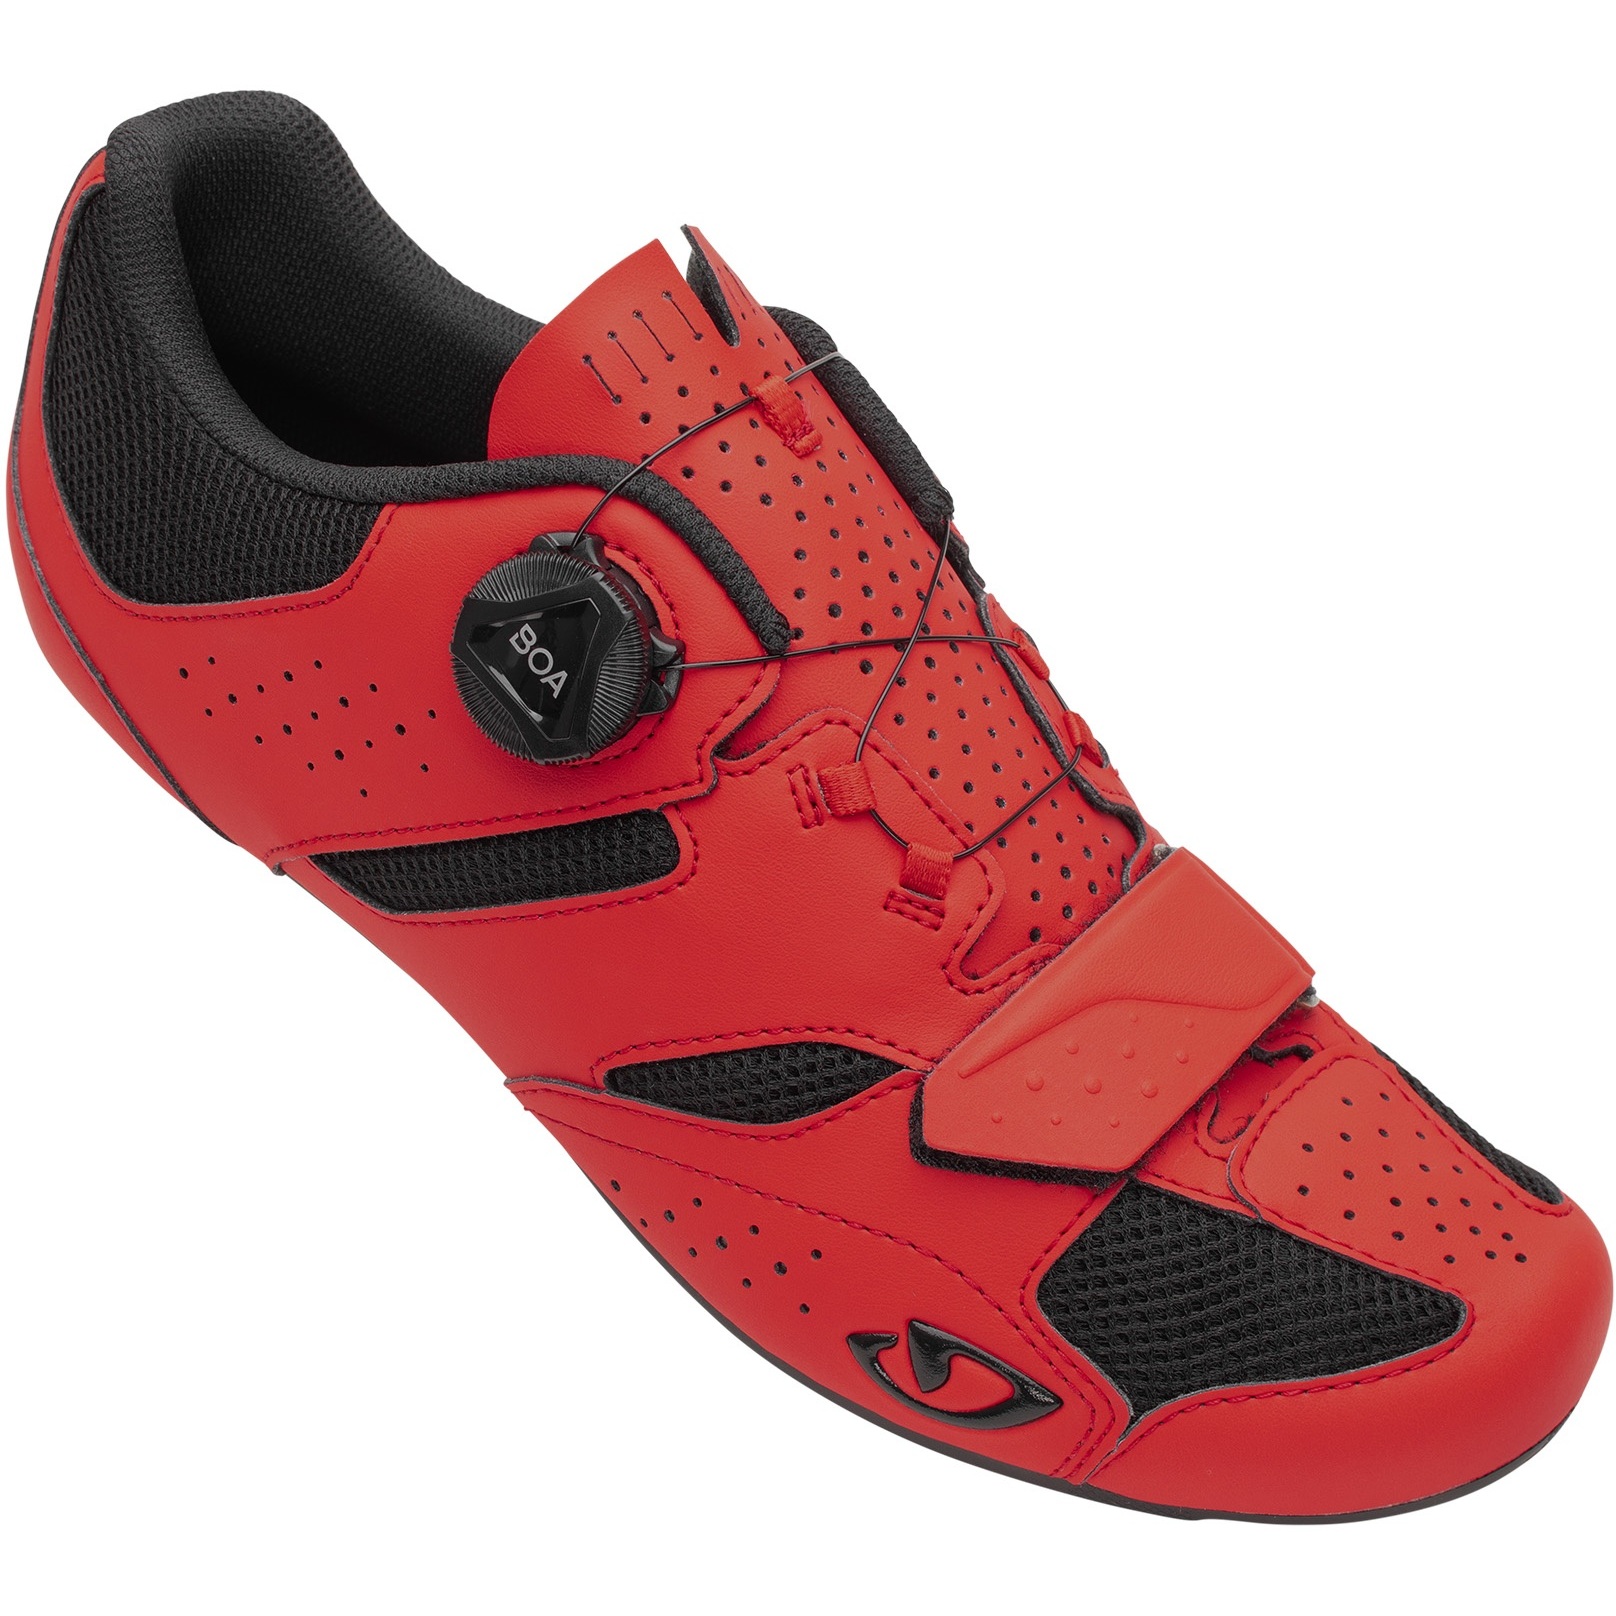 Produktbild von Giro Savix II Rennradschuhe - bright red